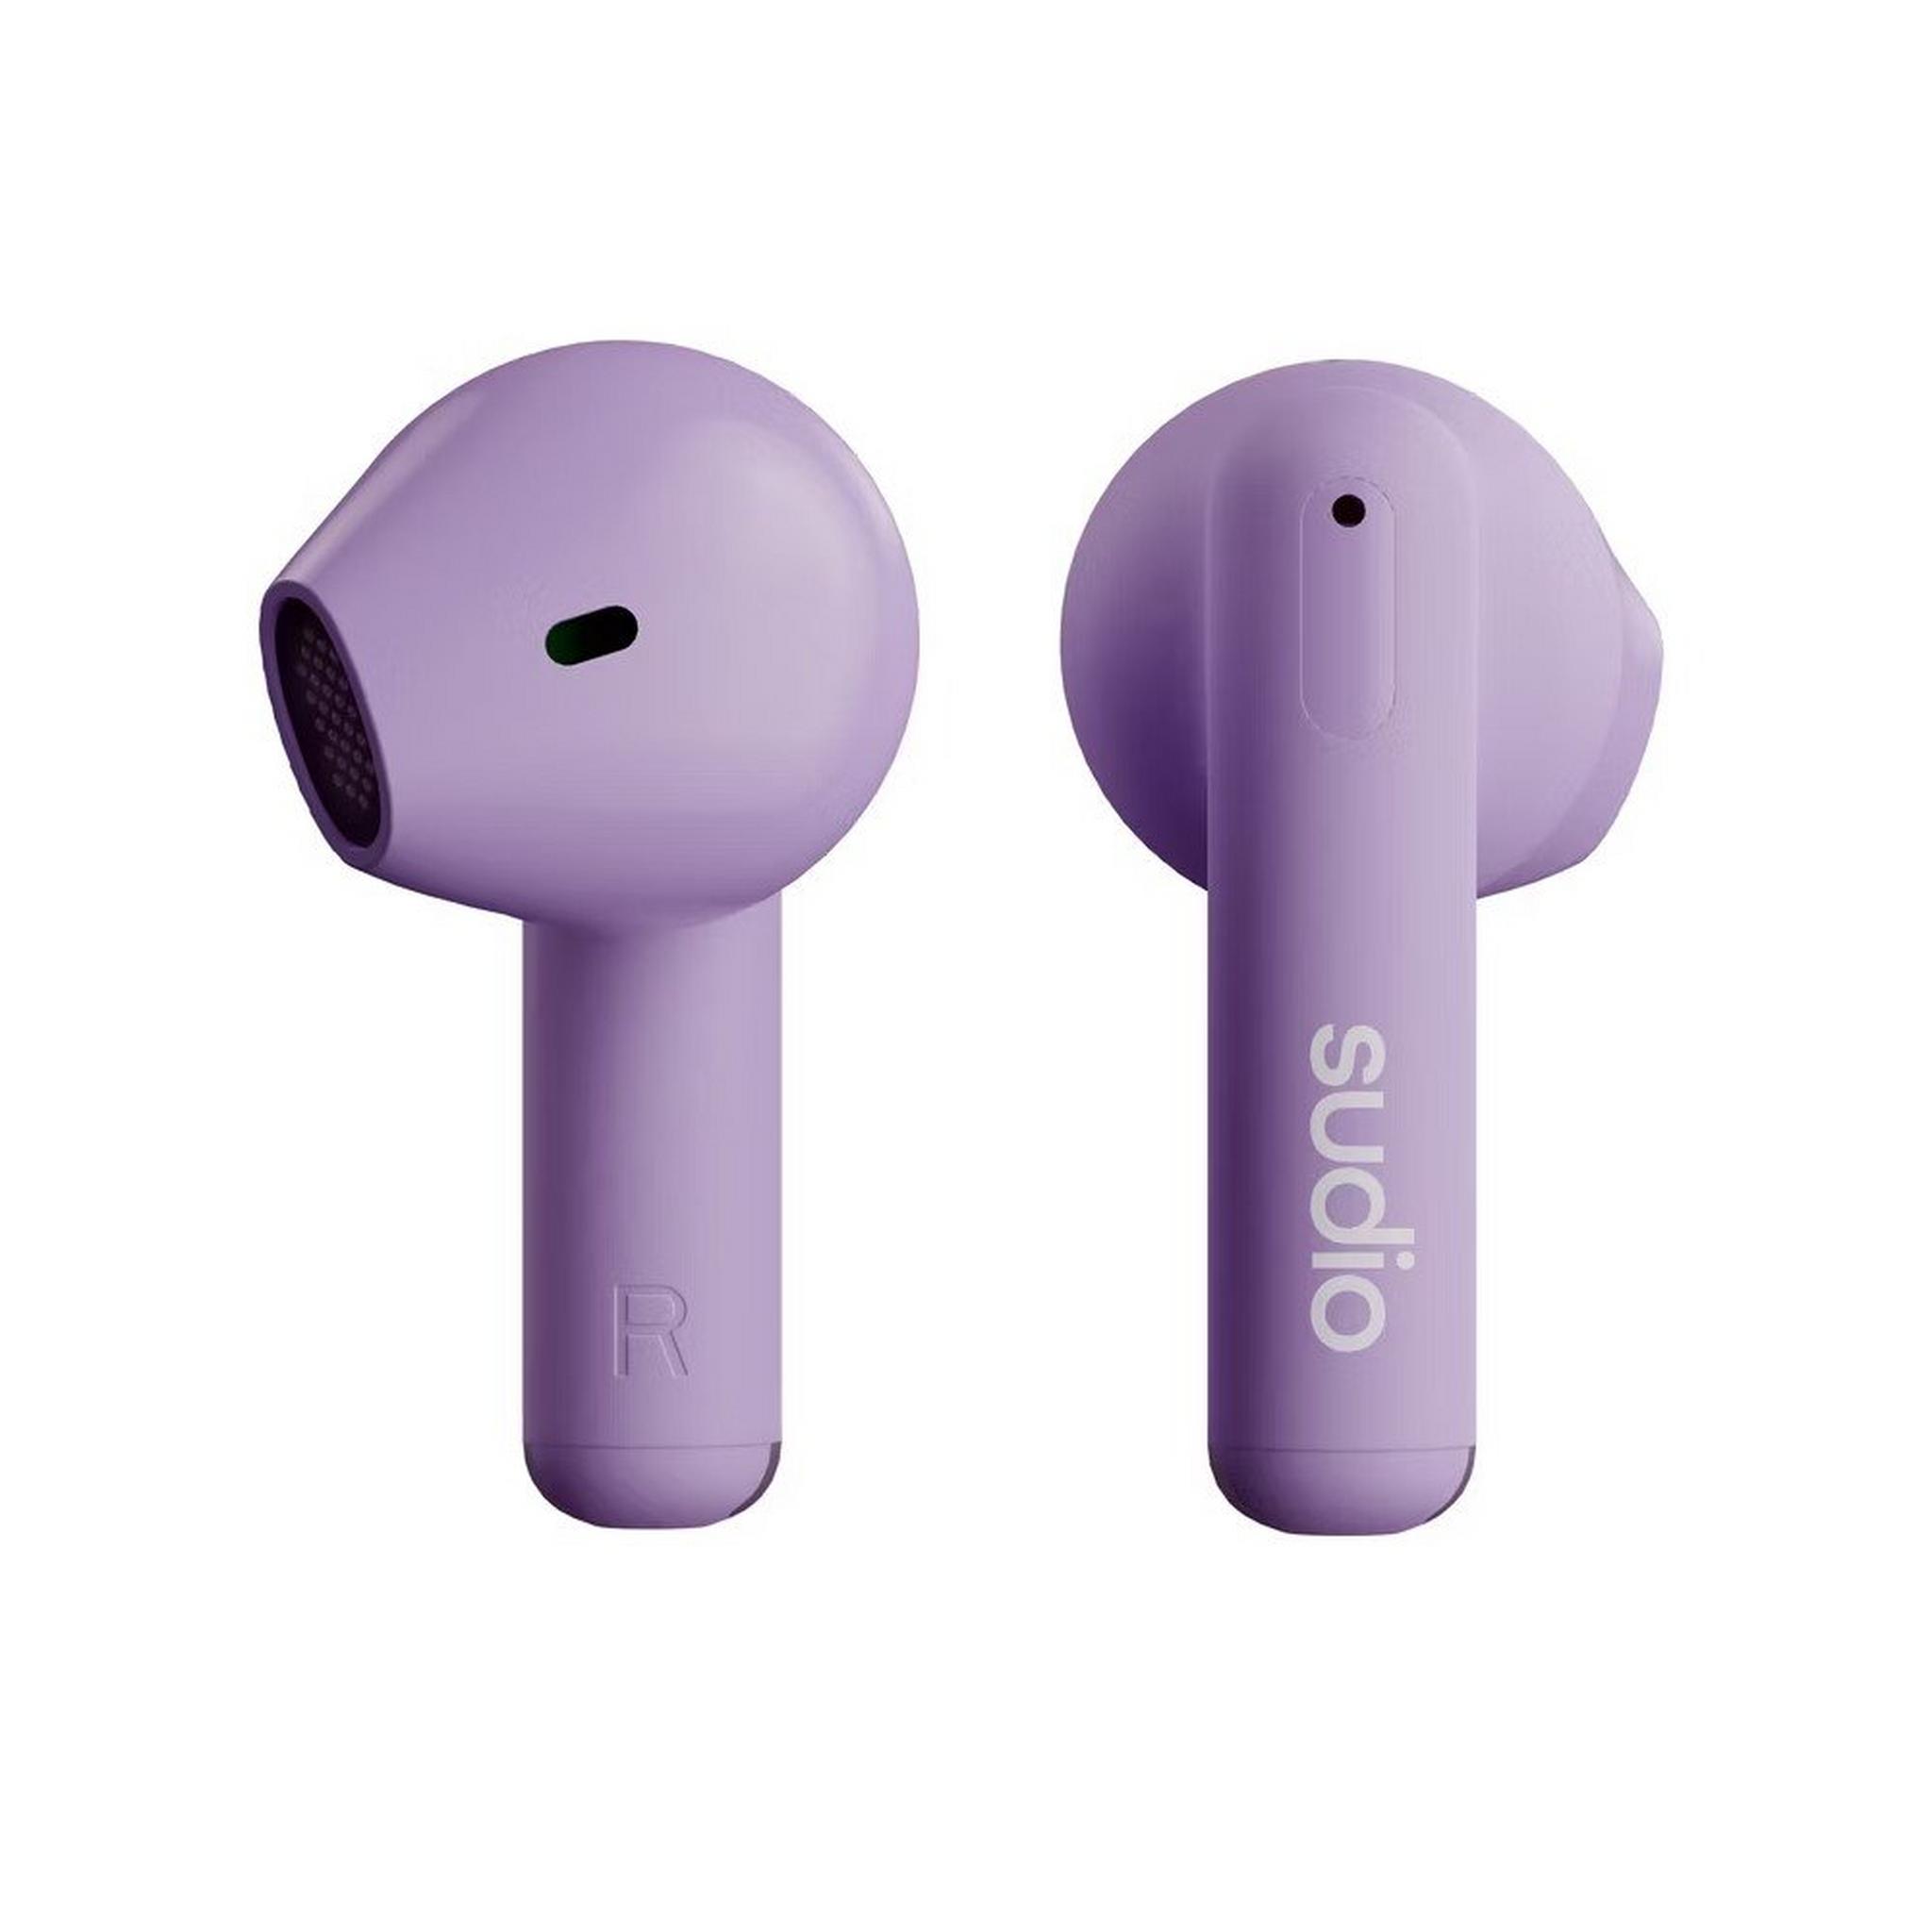 Sudio A1 In-Ear True Wireless Headphone - Purple